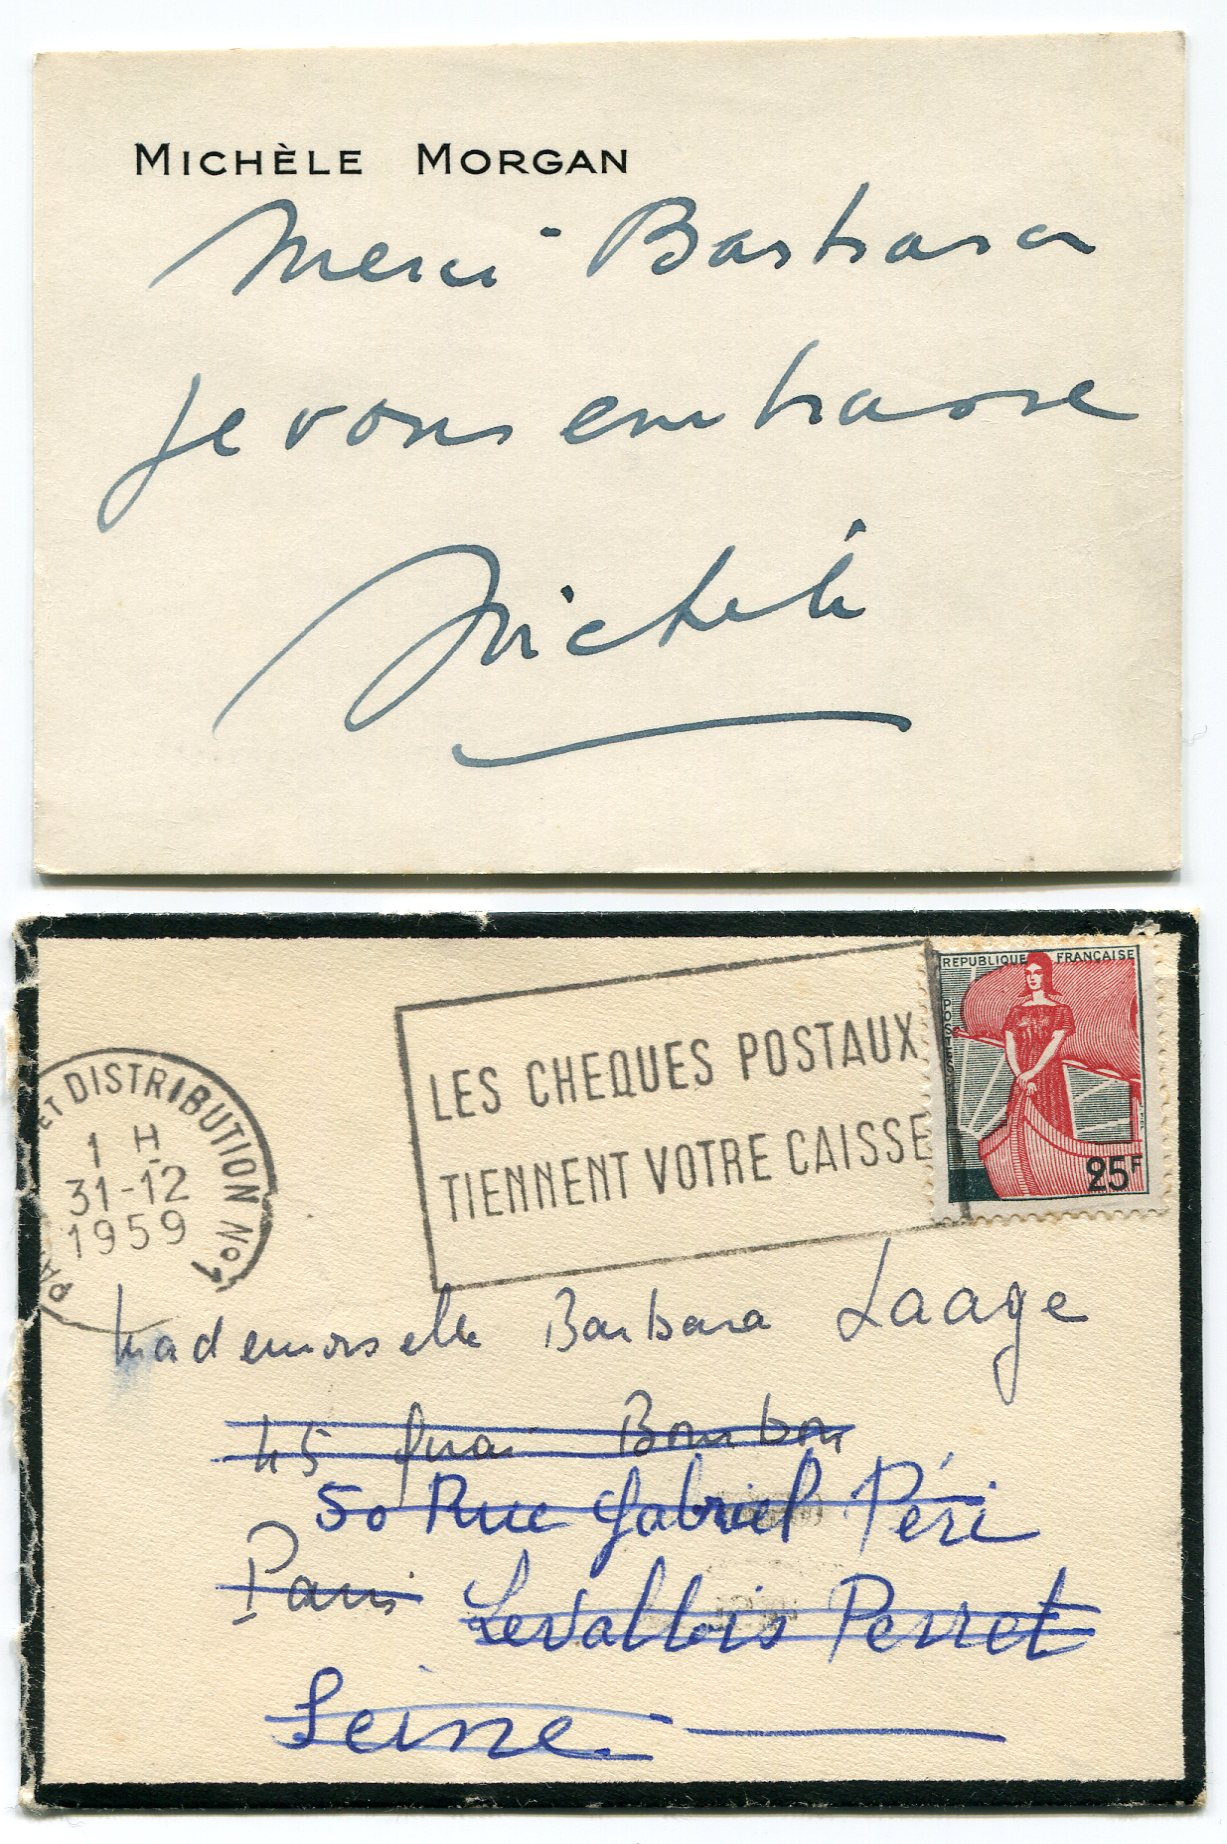 Michèle MORGAN - Carte de visite autographe signée (1959)